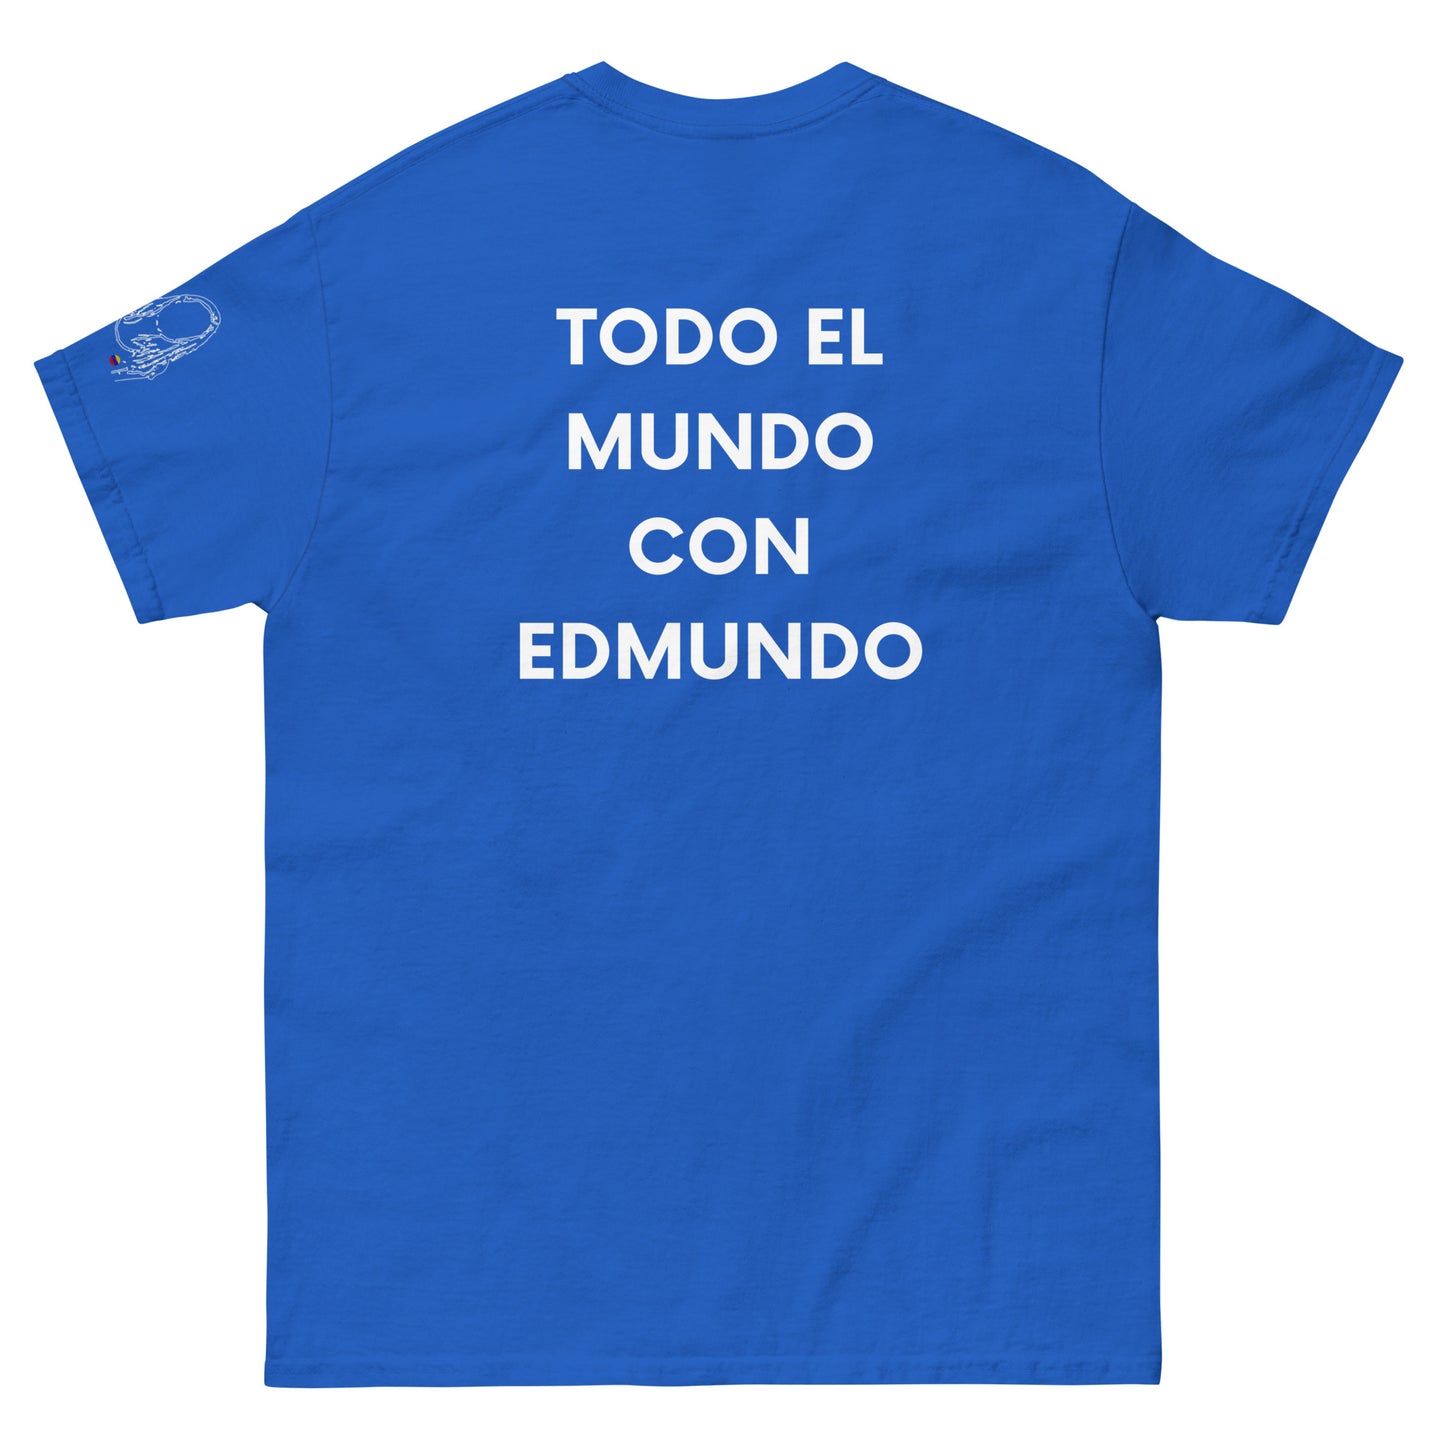 Camiseta clasica azul Venezuela hasta el final